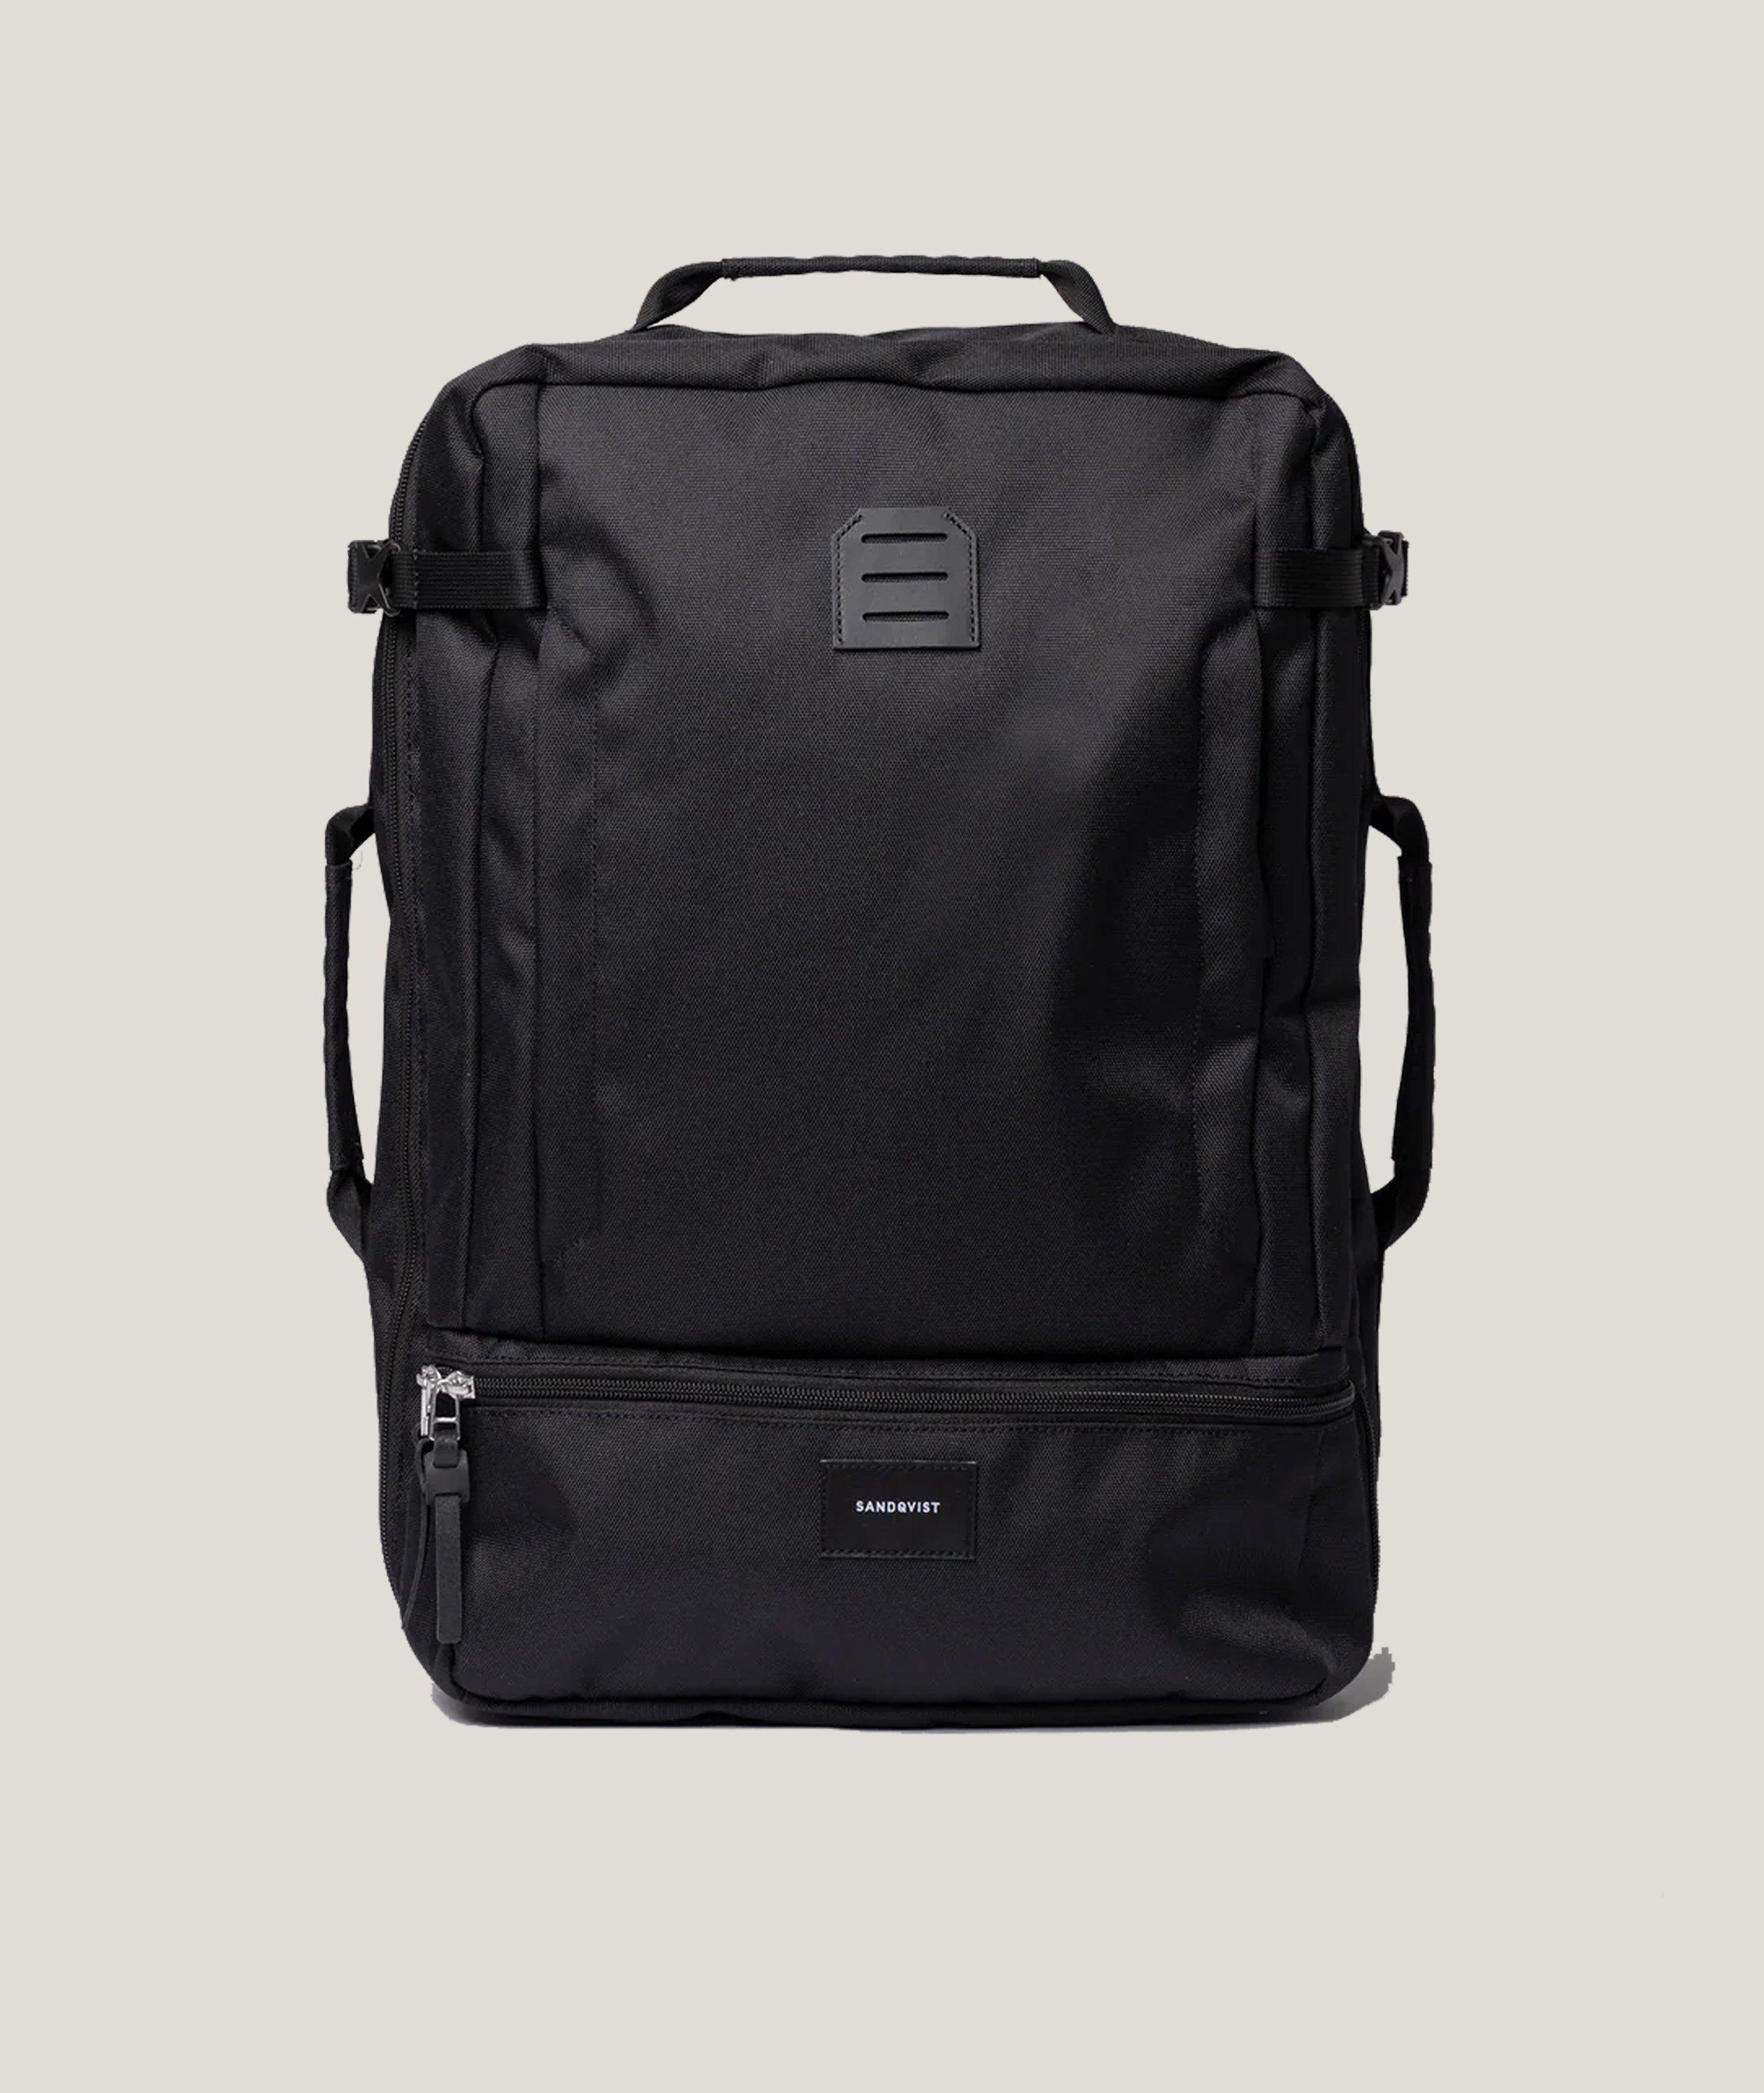 Otis Water-Resistant Backpack